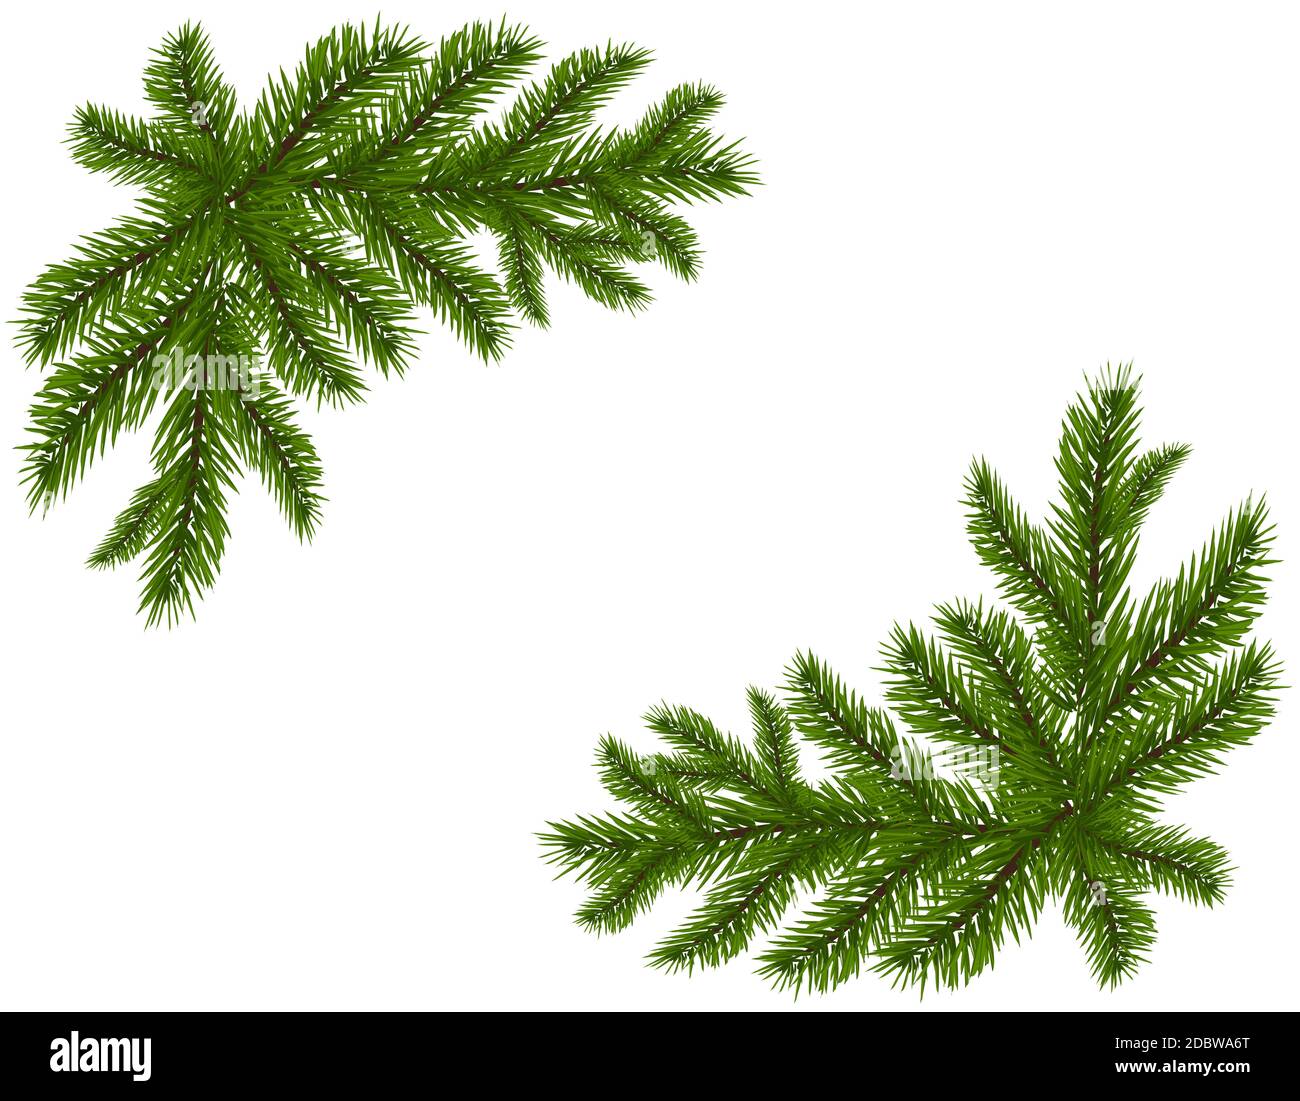 Dos ramas de abeto verde realista. Colocado en las esquinas. Ramas de abeto. Aislado sobre fondo blanco. Ilustración del vector de Navidad Foto de stock